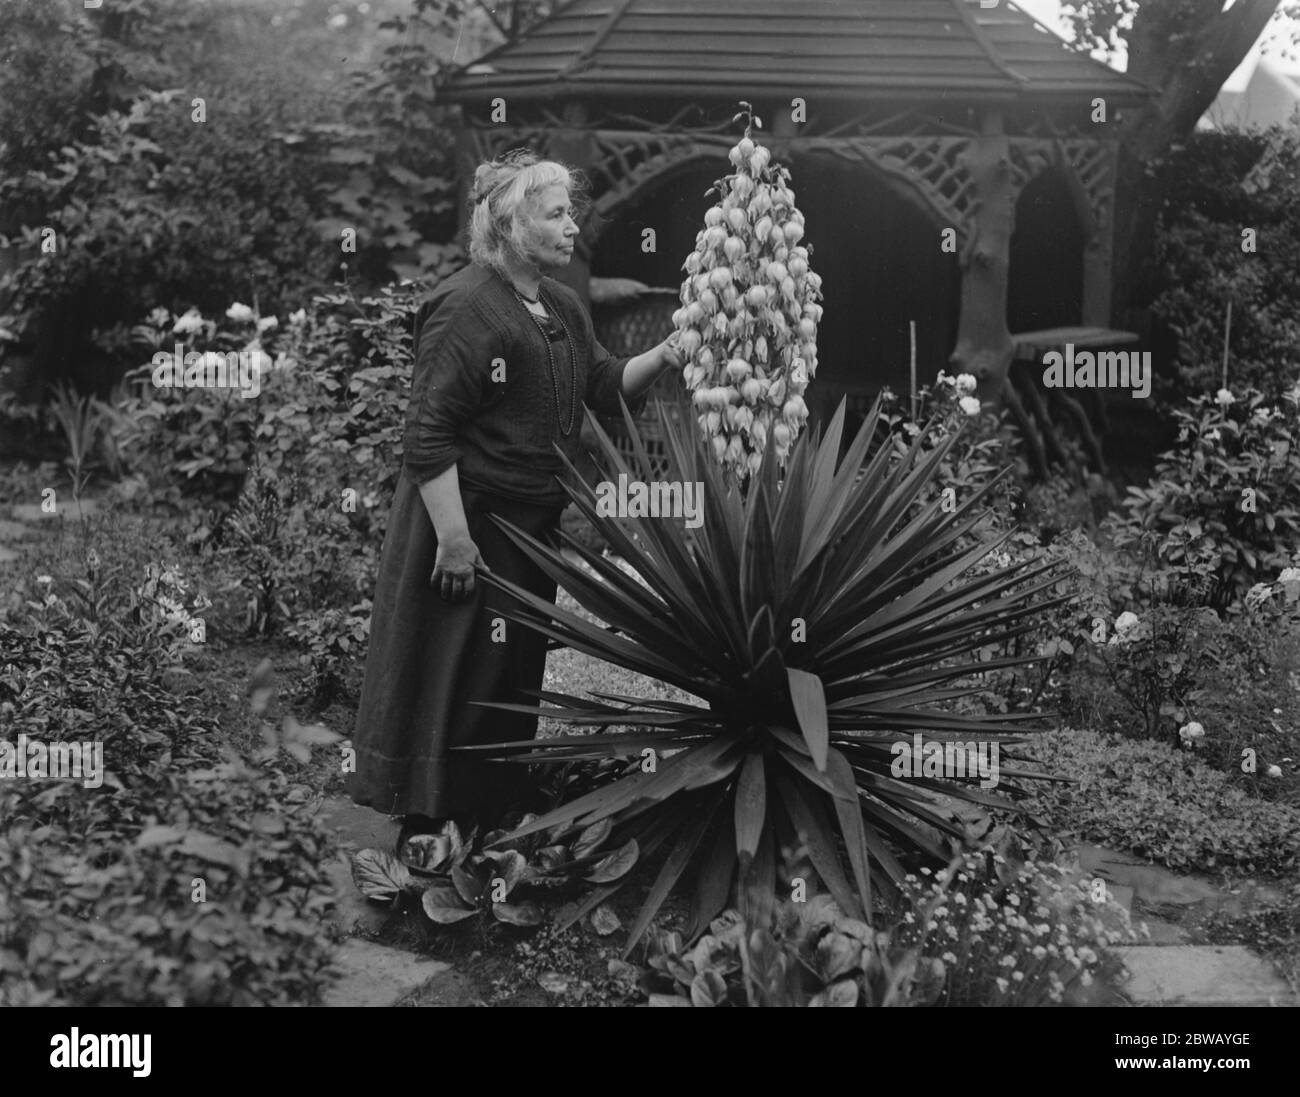 Wird sie sehen, es wieder blühen. Frau R O Davies von Emmanuel Avenue Acton bewundern in ihrem Garten eine blühende Aloe, die Yucca, die nur einmal in 50 Jahren blüht. 13 Juni 1922 Stockfoto